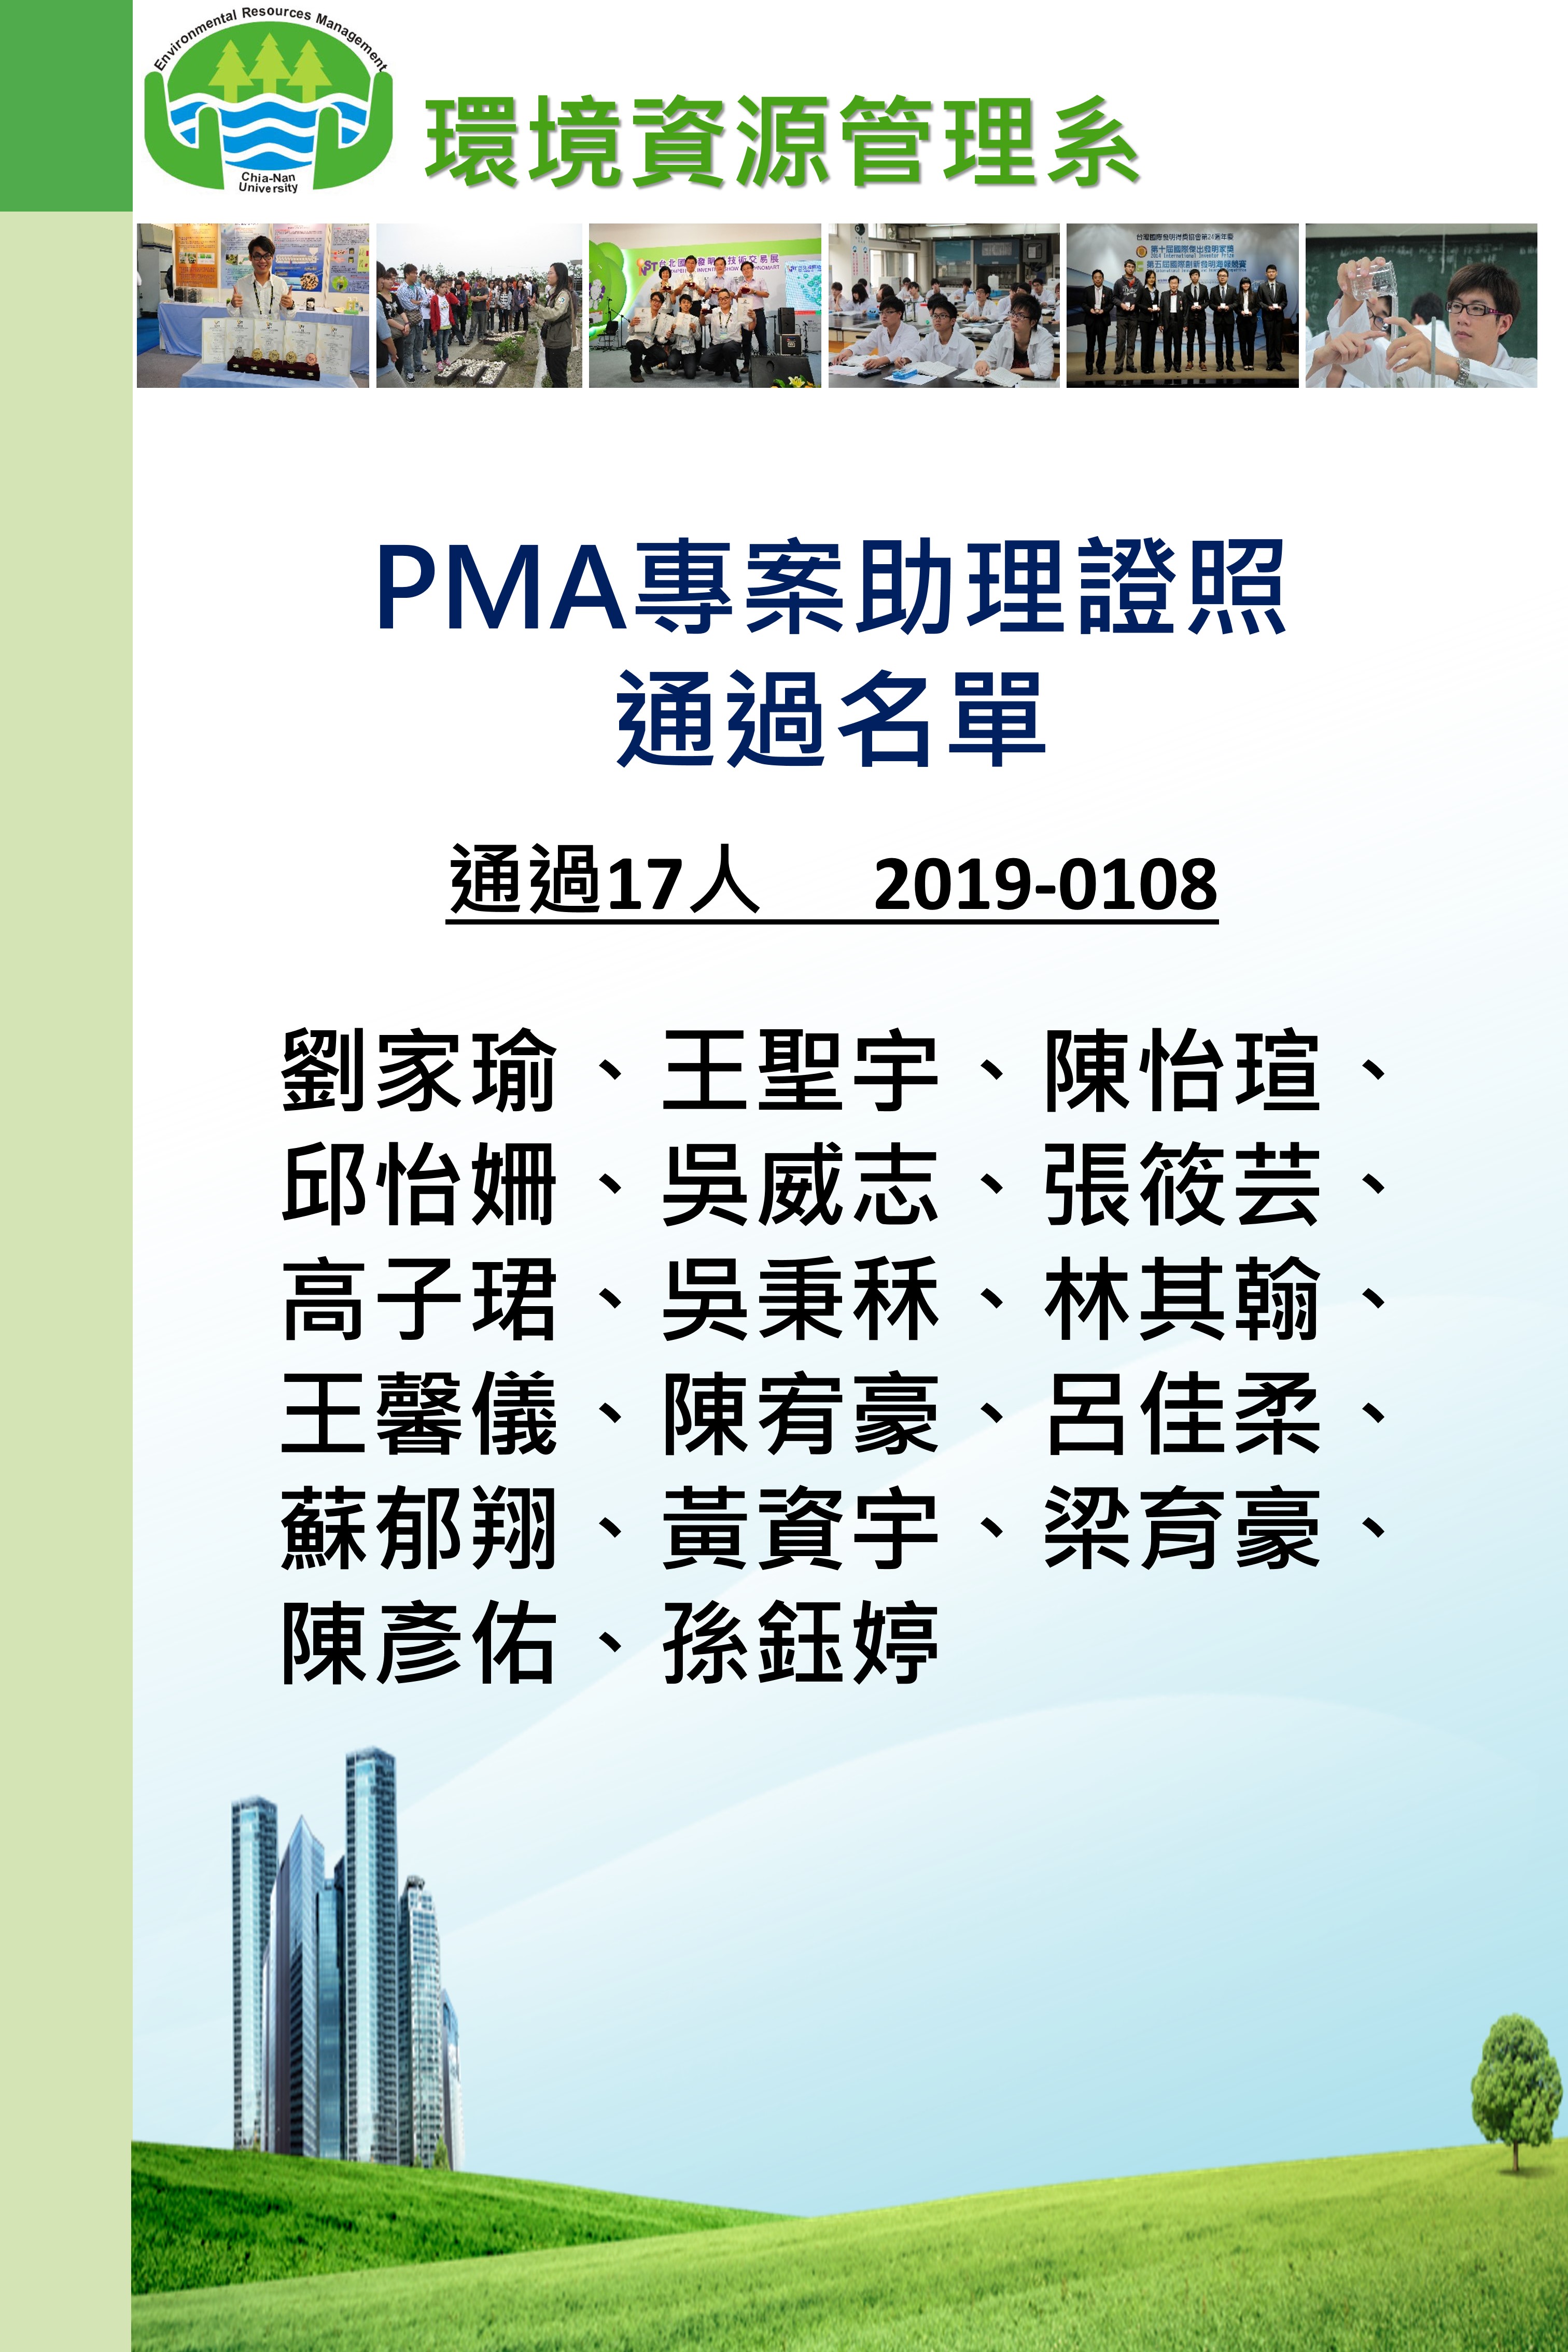 PMA通過名單海報-A1